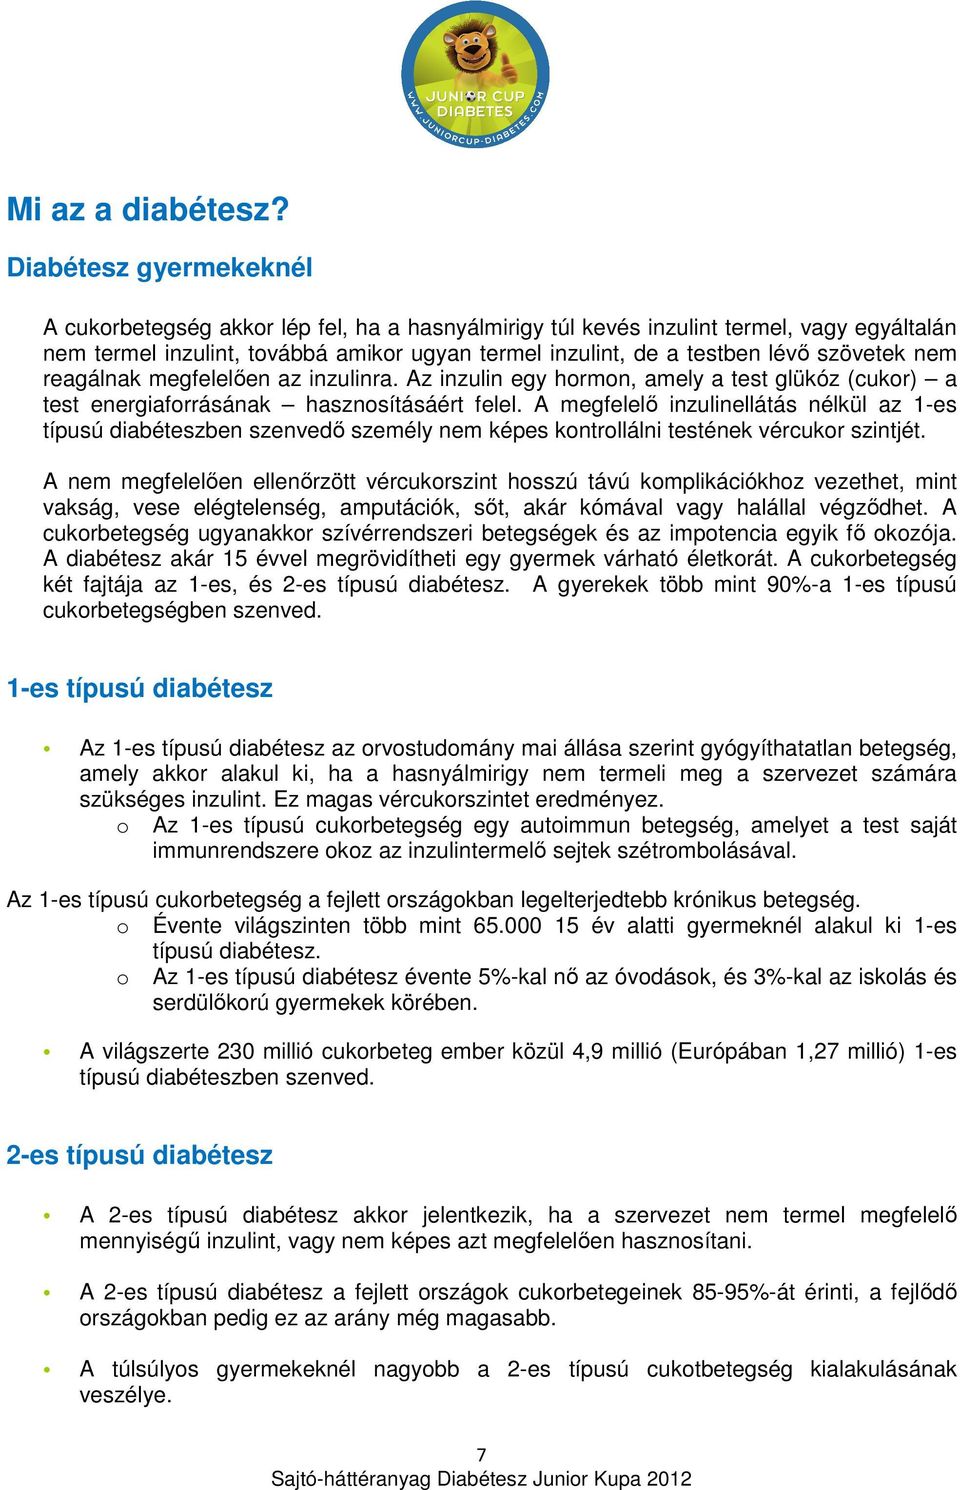 cukorbetegség kezelése mérkőzések)